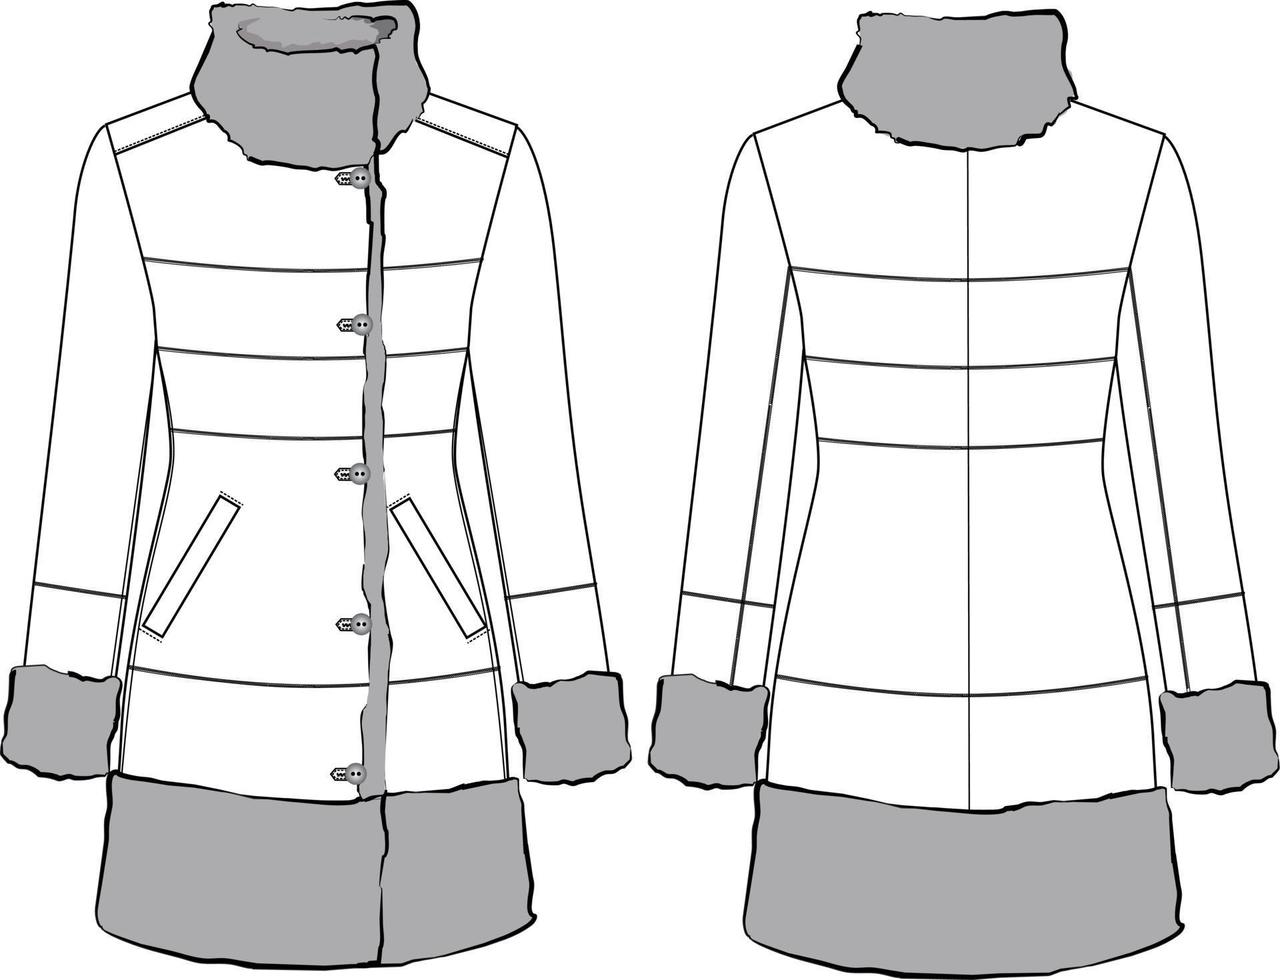 illustration de manteau de veste en daim de mode. croquis de mode plat outwear vecteur